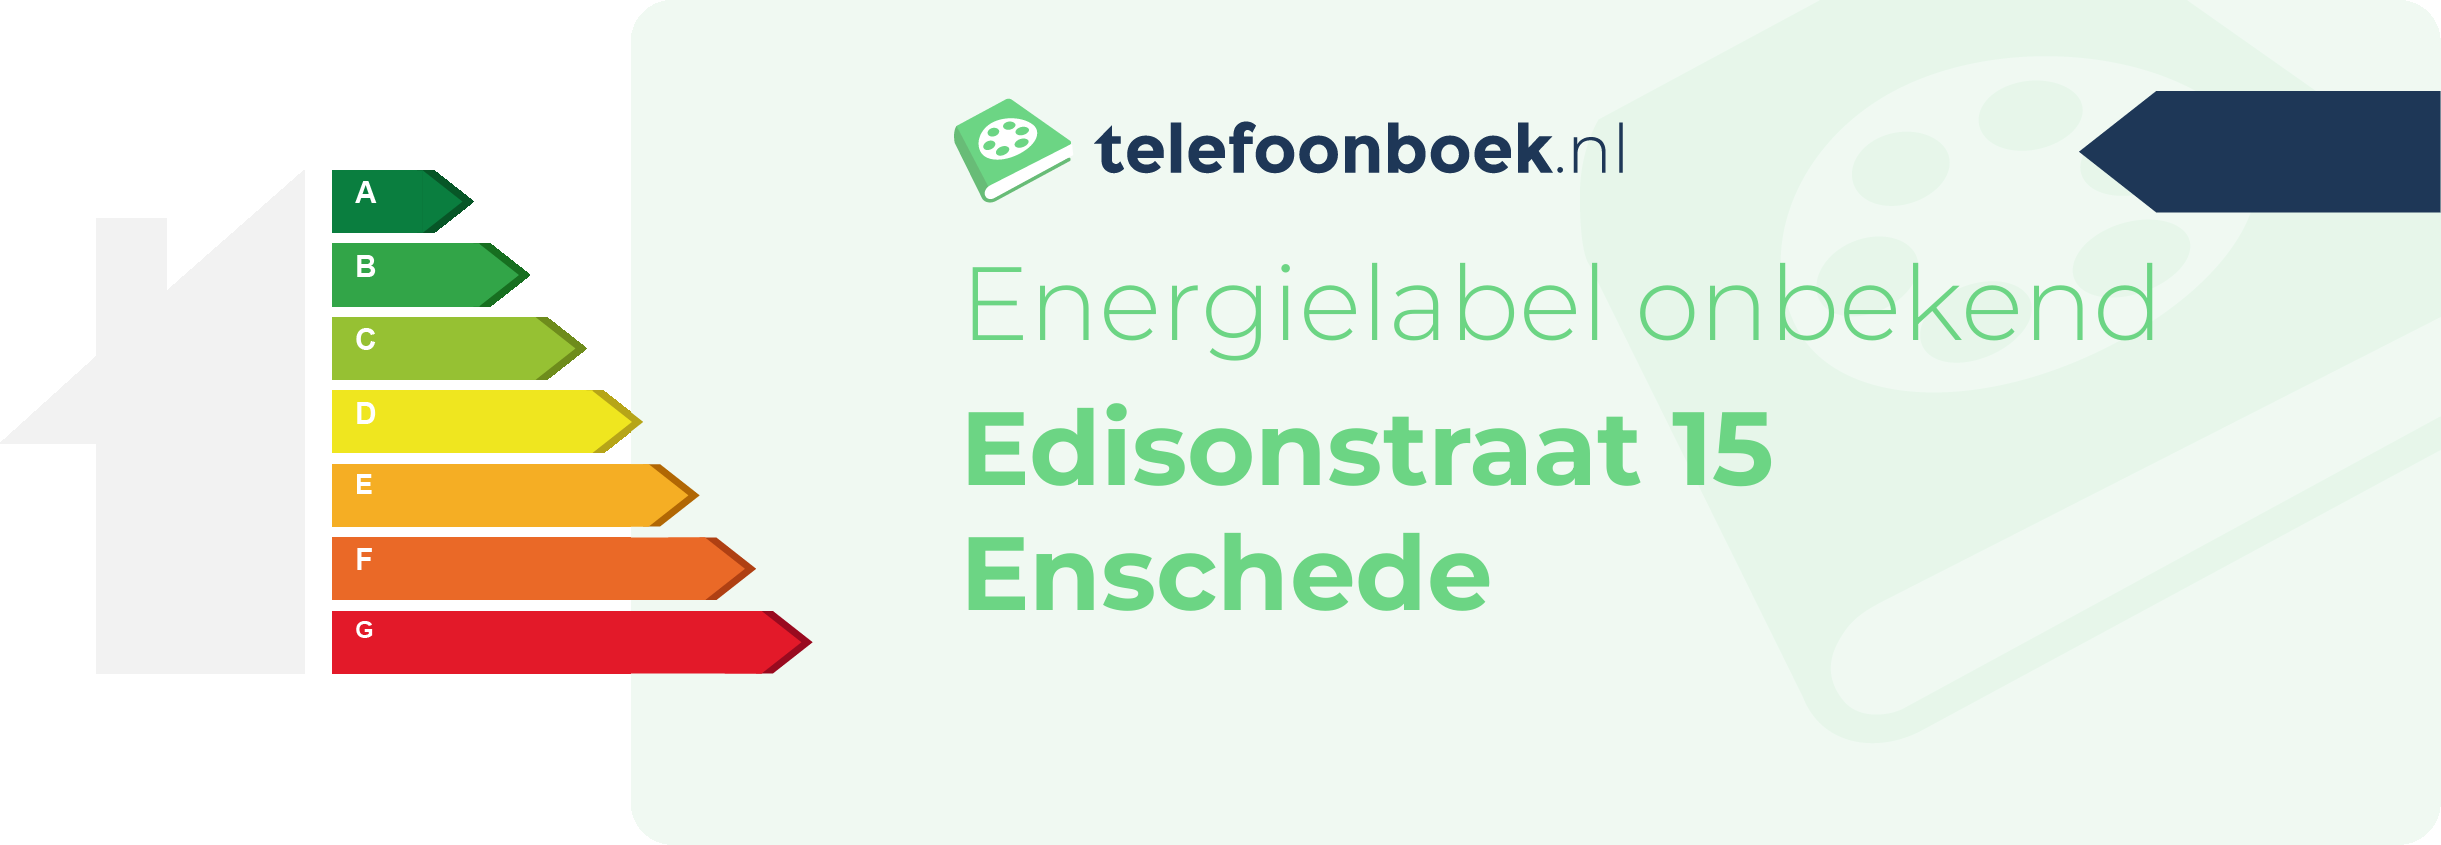 Energielabel Edisonstraat 15 Enschede